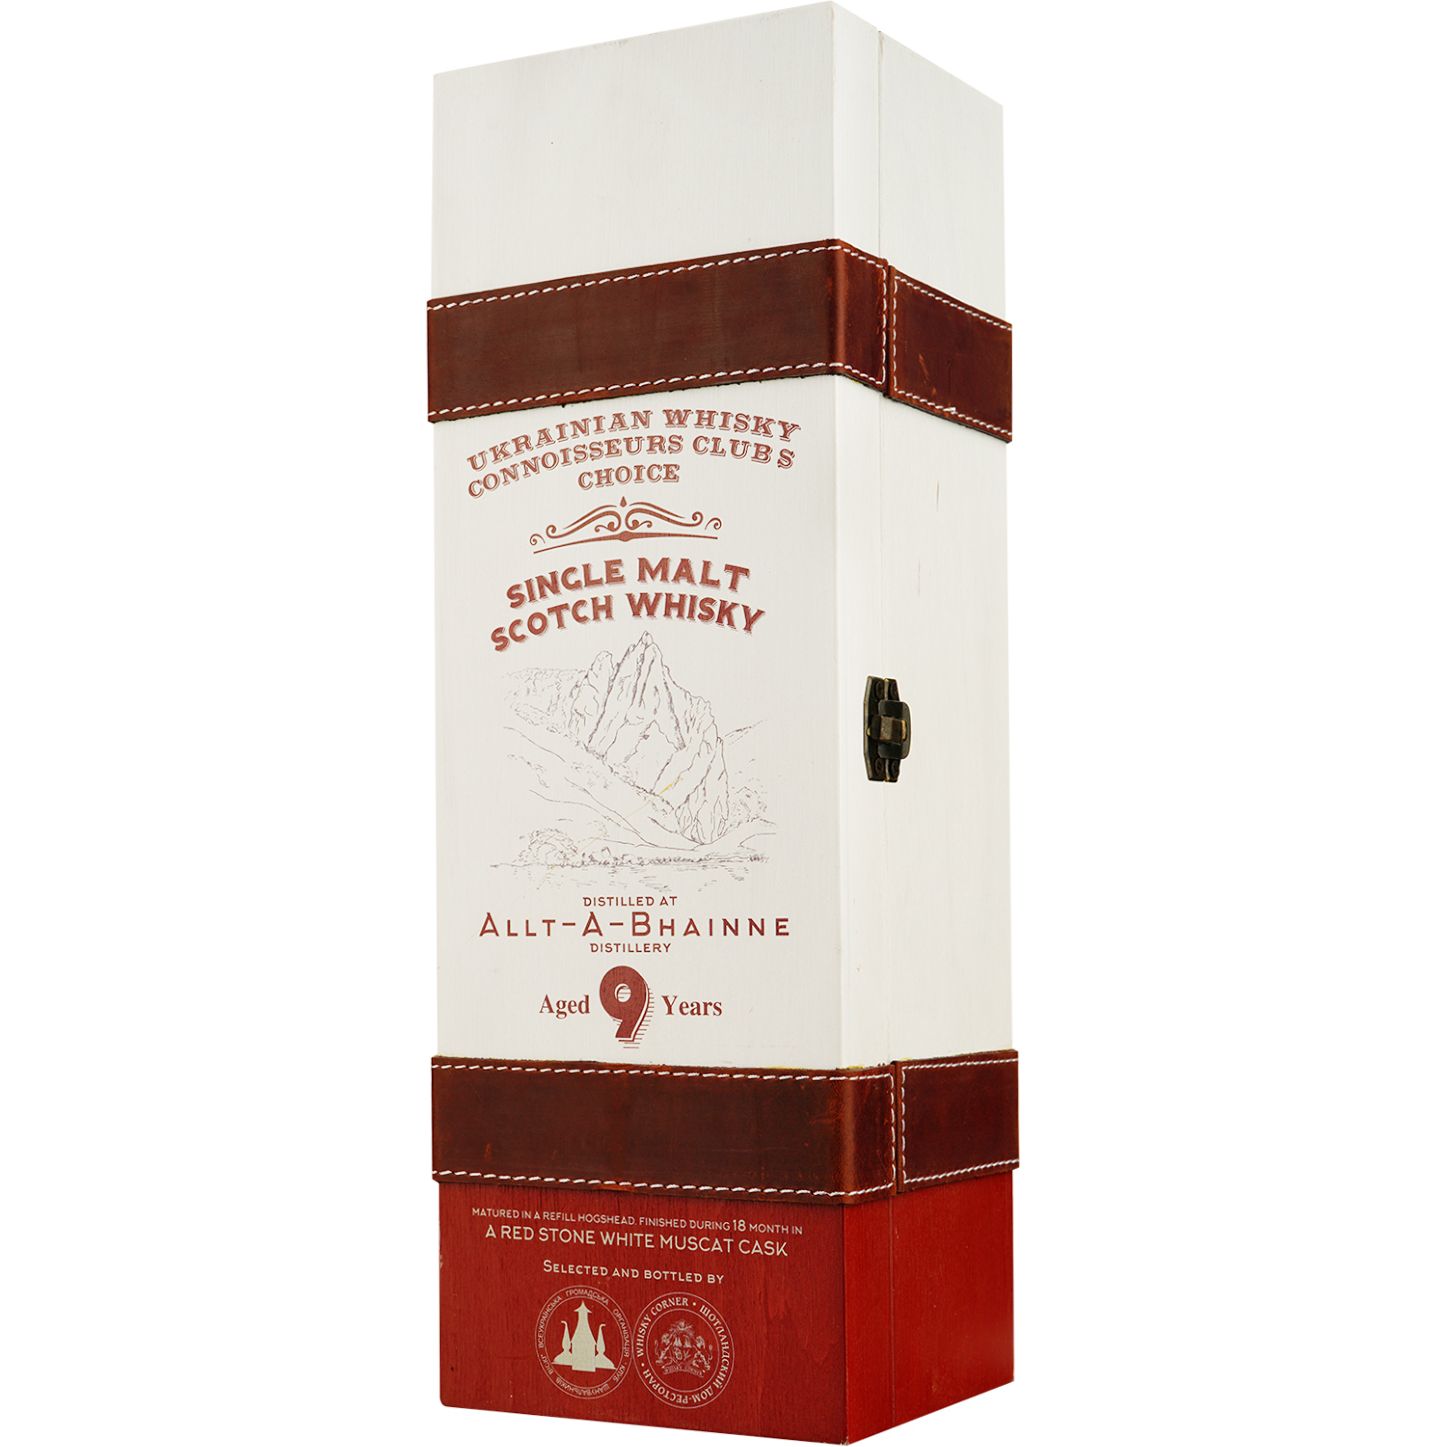 Віскі Allt-A-Bhainne 9 Years Old White Muscat Red Stone Single Malt Scotch Whisky, у подарунковій упаковці, 53,2%, 0,7 л - фото 3